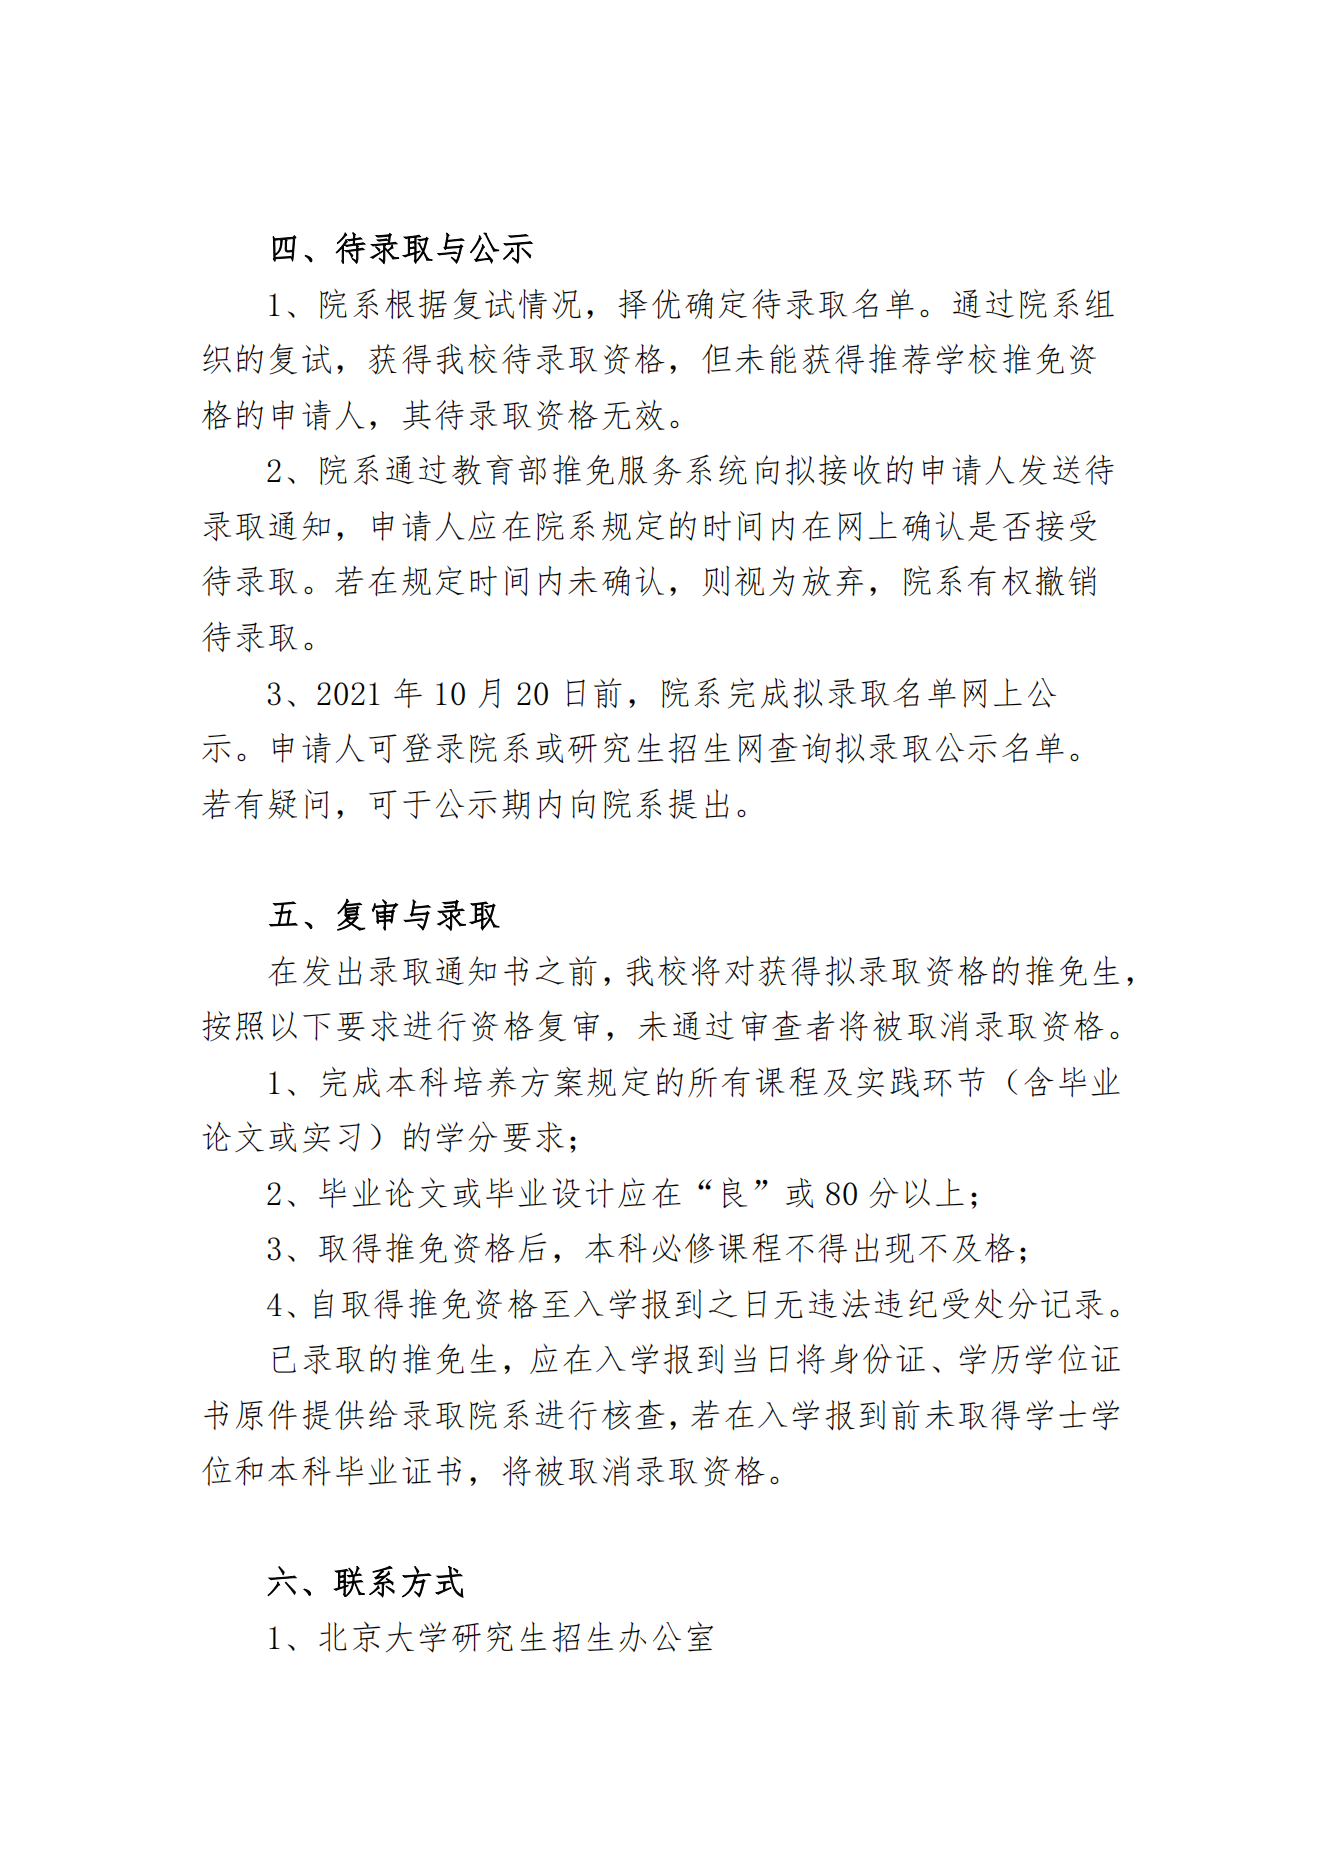 北京大学 2022 年接收推荐免试研究生办法(校本部)